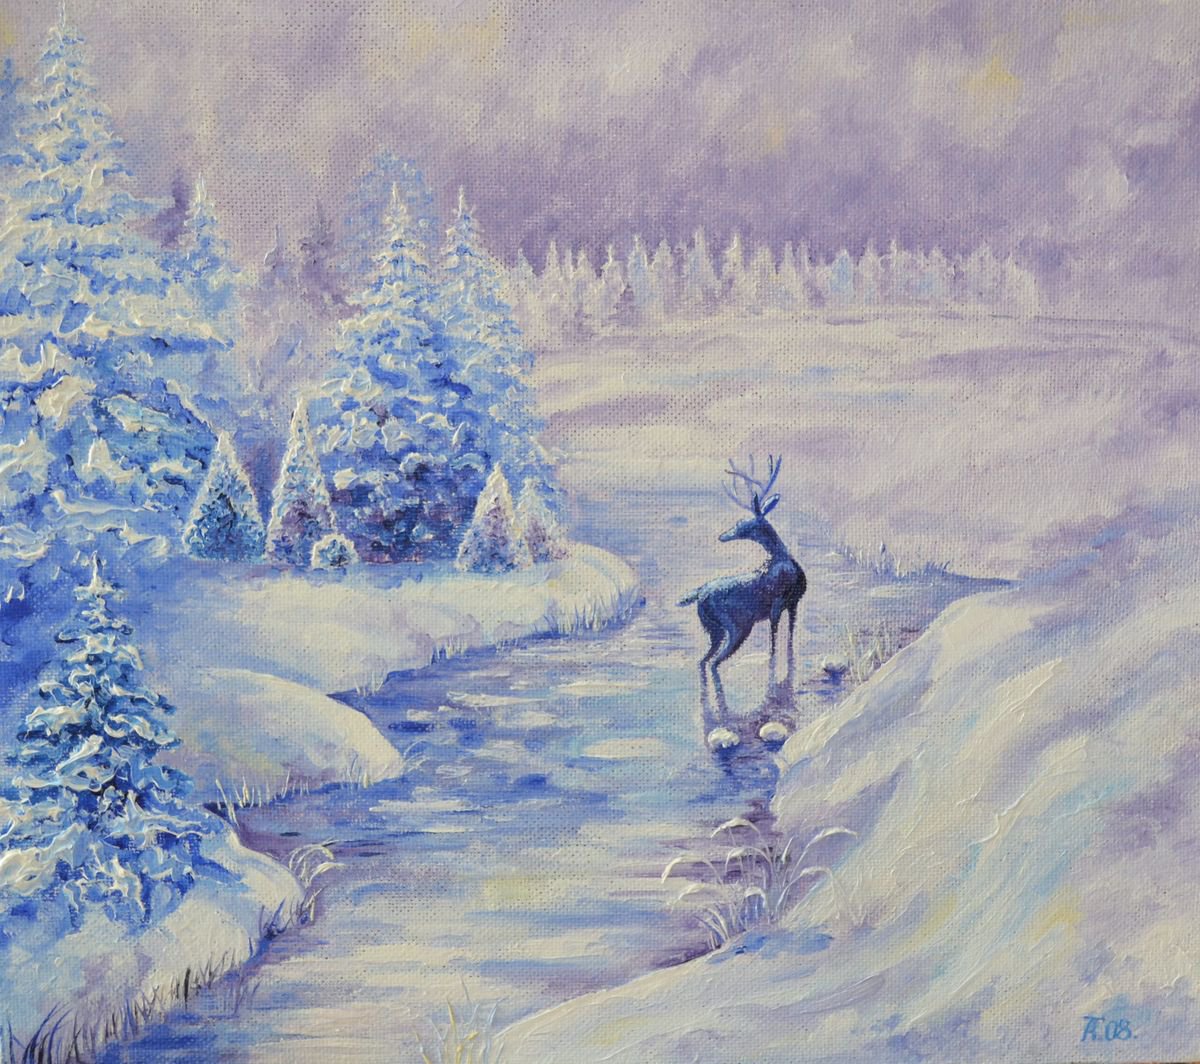 Winter fairy tale by Tatyana Ambre